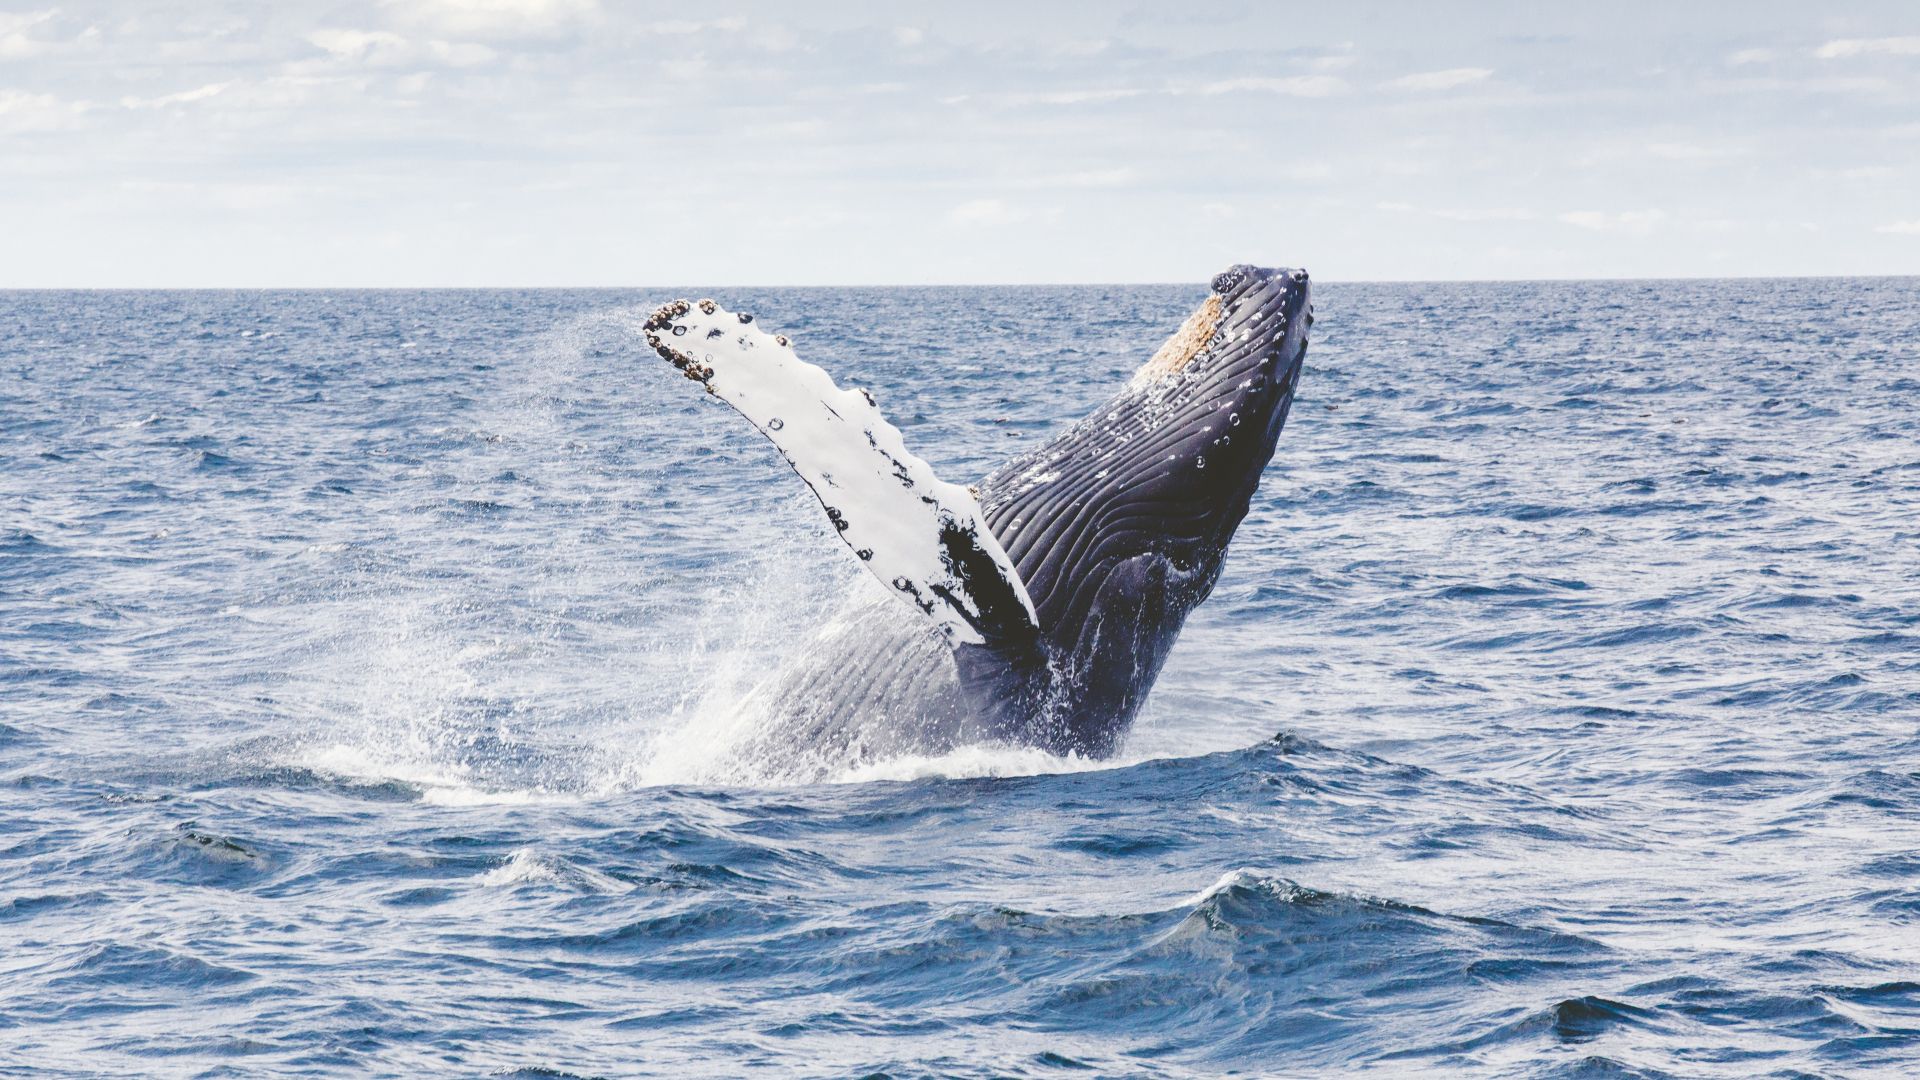 кит, 5k, 4k, 8k, океан, whale, 5k, 4k wallpaper, 8k, ocean (horizontal)